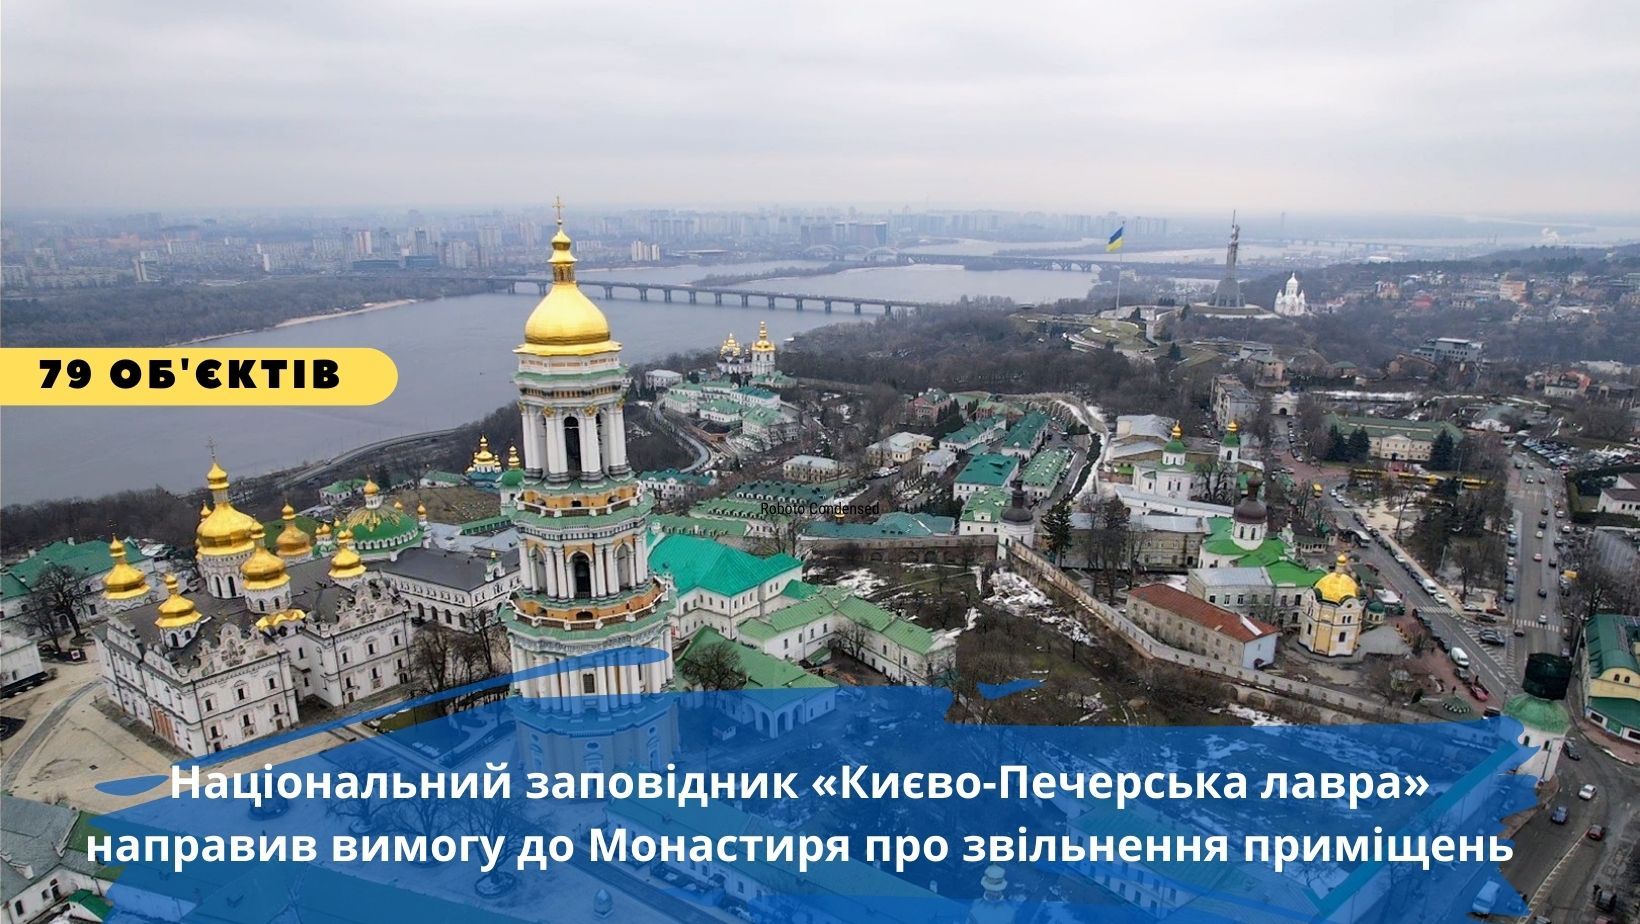 Києво-Печерська епопея: московським ченцям дали три дні на звільнення 79 об’єктів лаври